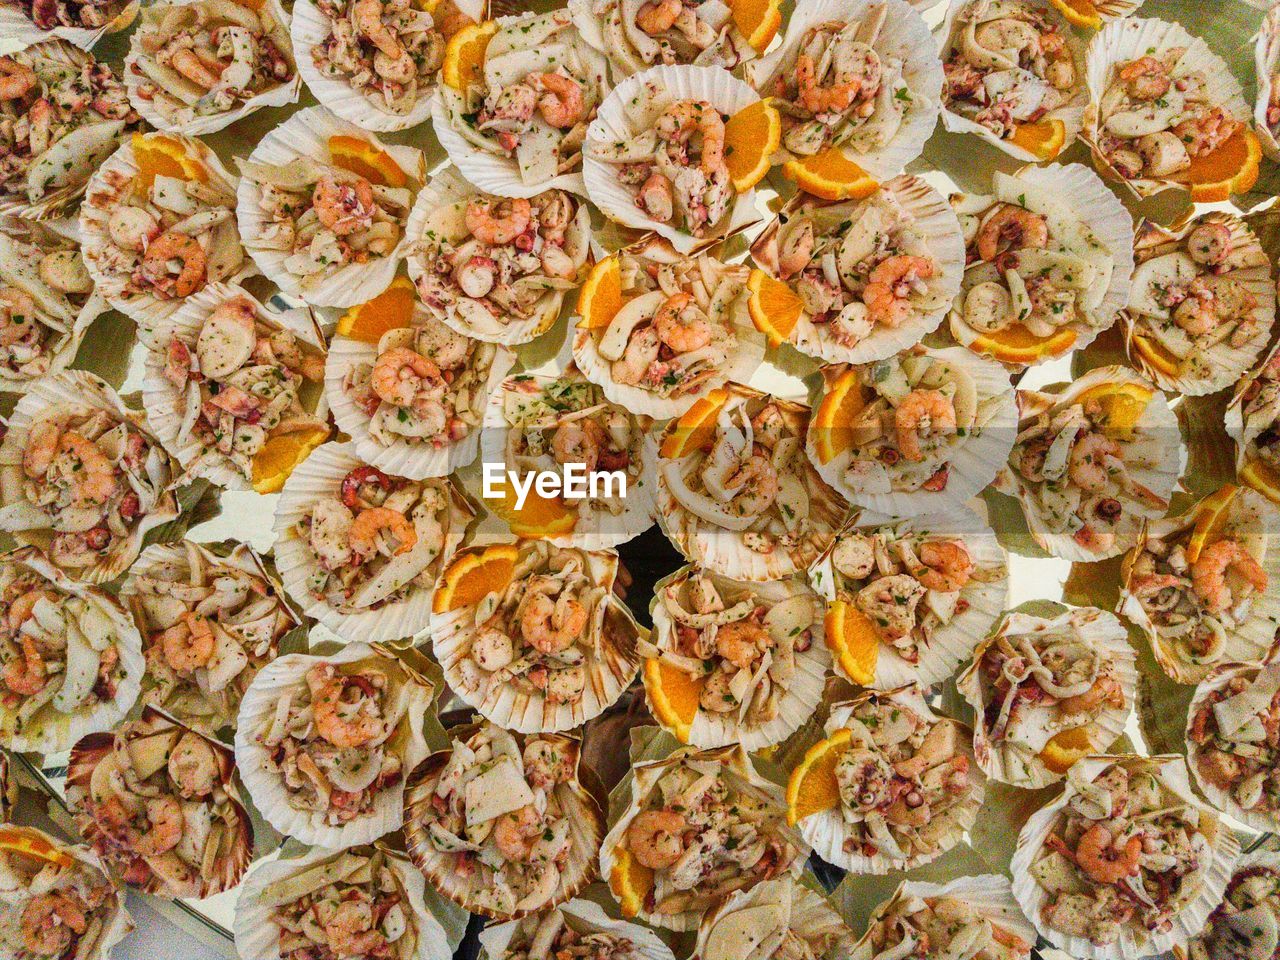 Detail shot of seafood